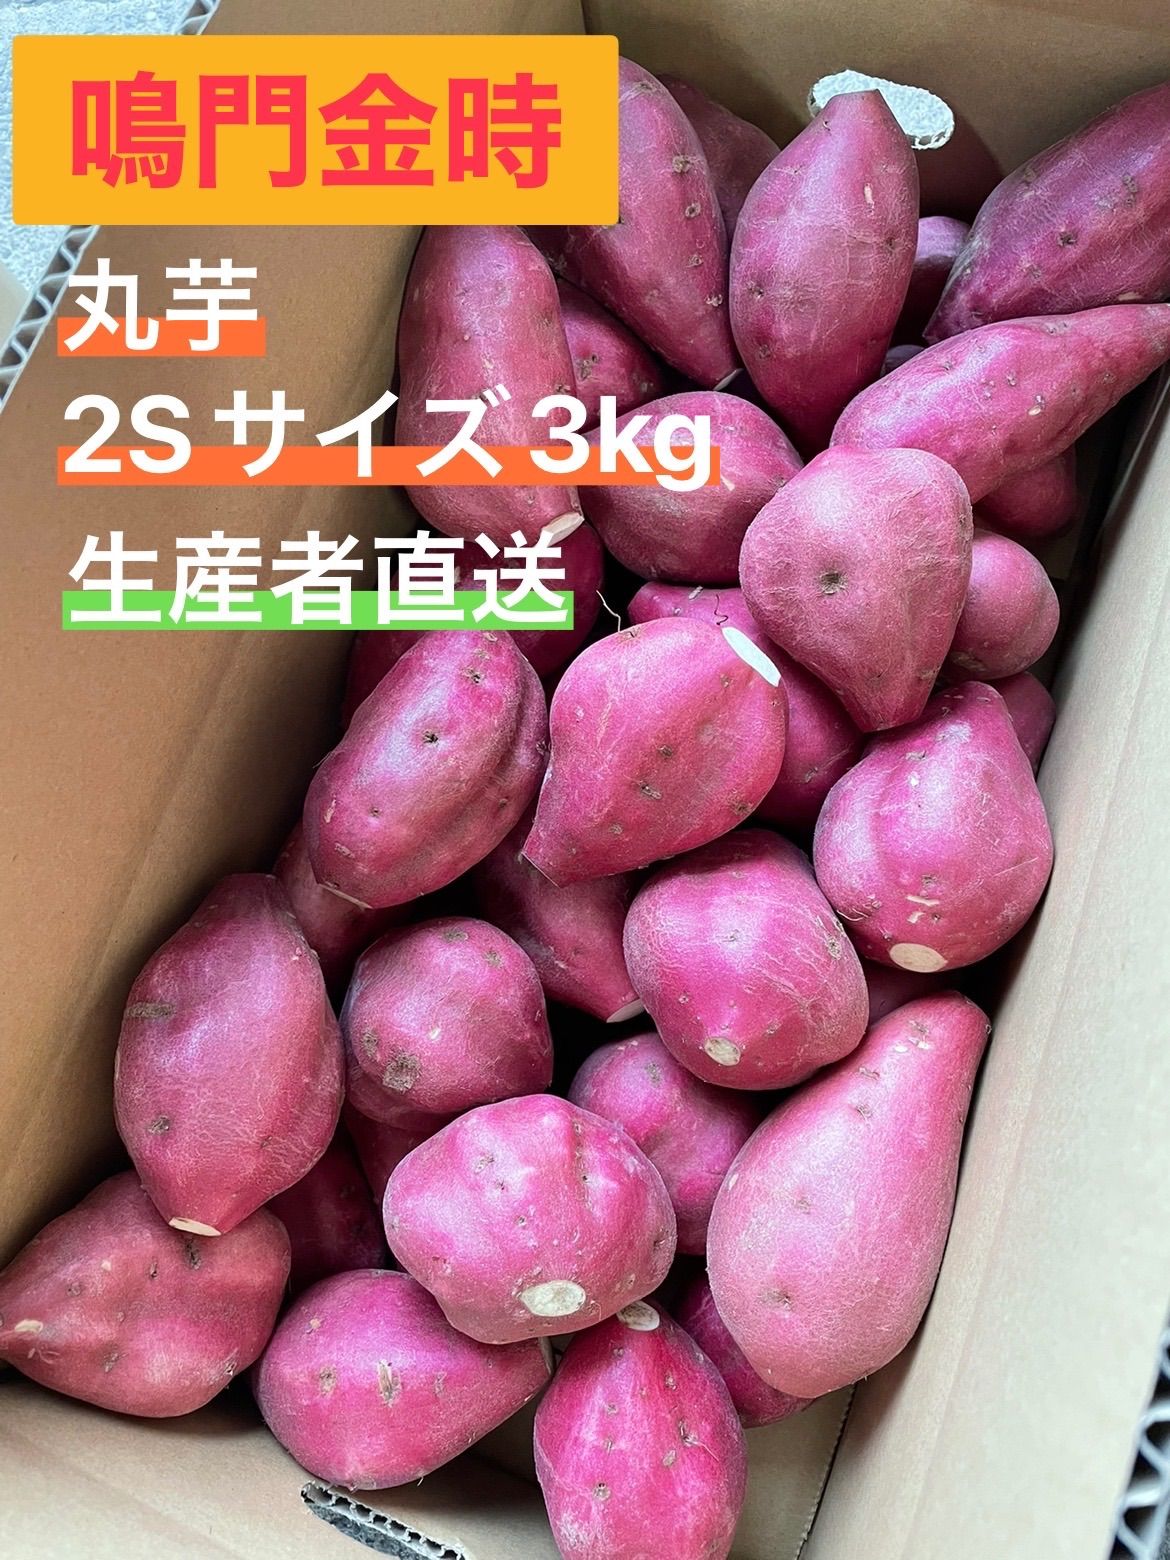 ◯●鳴門金時●◯  2Sサイズ 5kg 丸芋●◯鳴門産さつまいも◯●